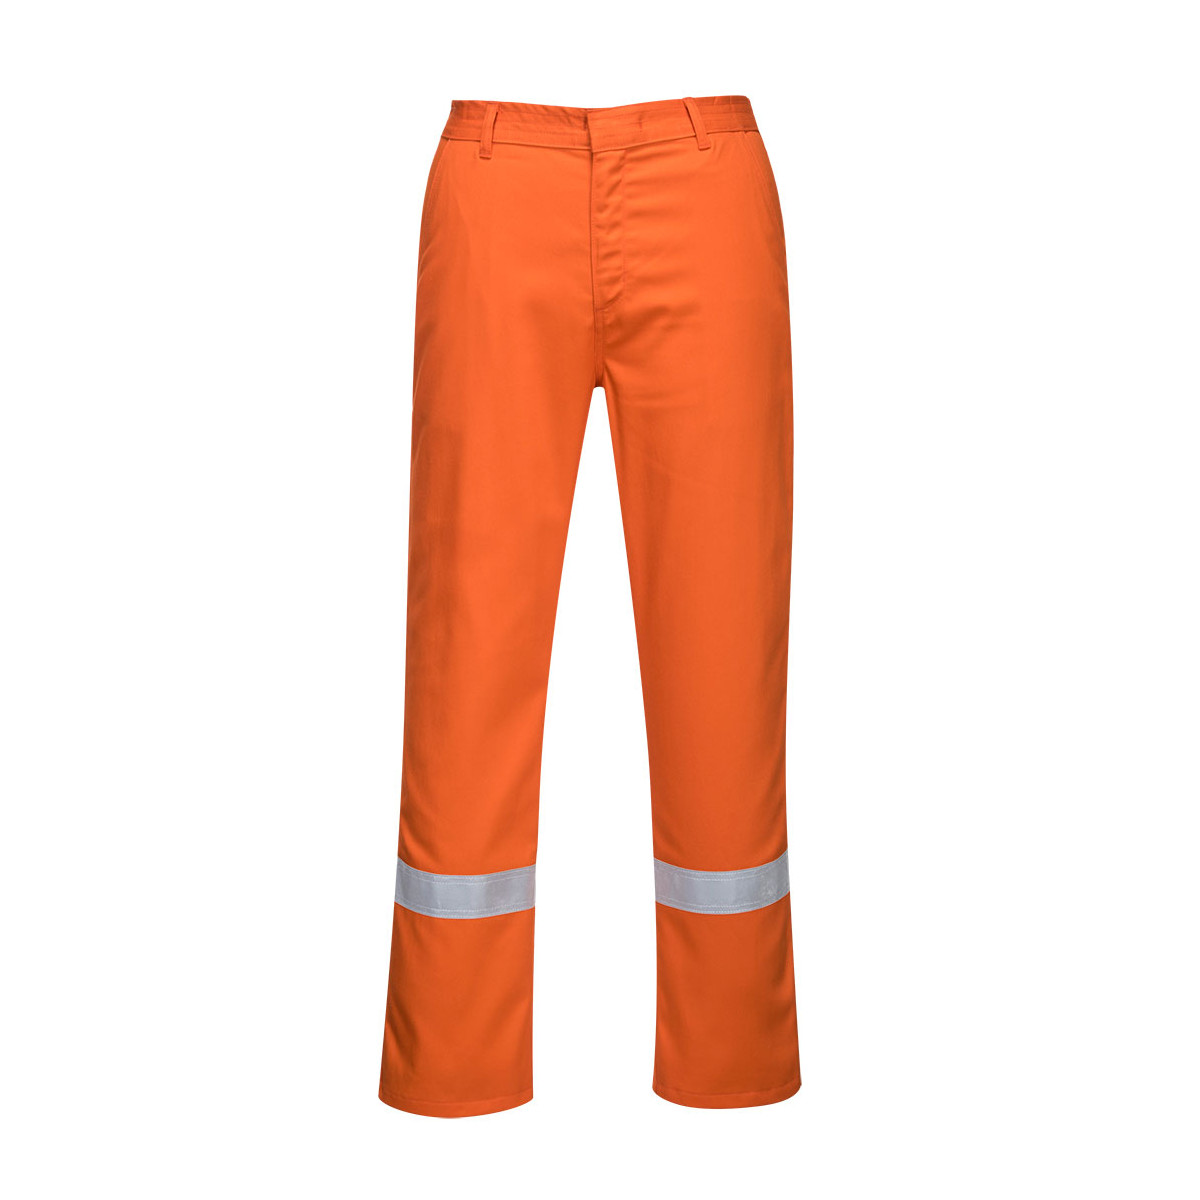 trudnopalna-odziez - Spodnie trudnopalne do pasa bizweld iona pomarańczowe ostrzegawcze odblaskowe BZ14 Portwest